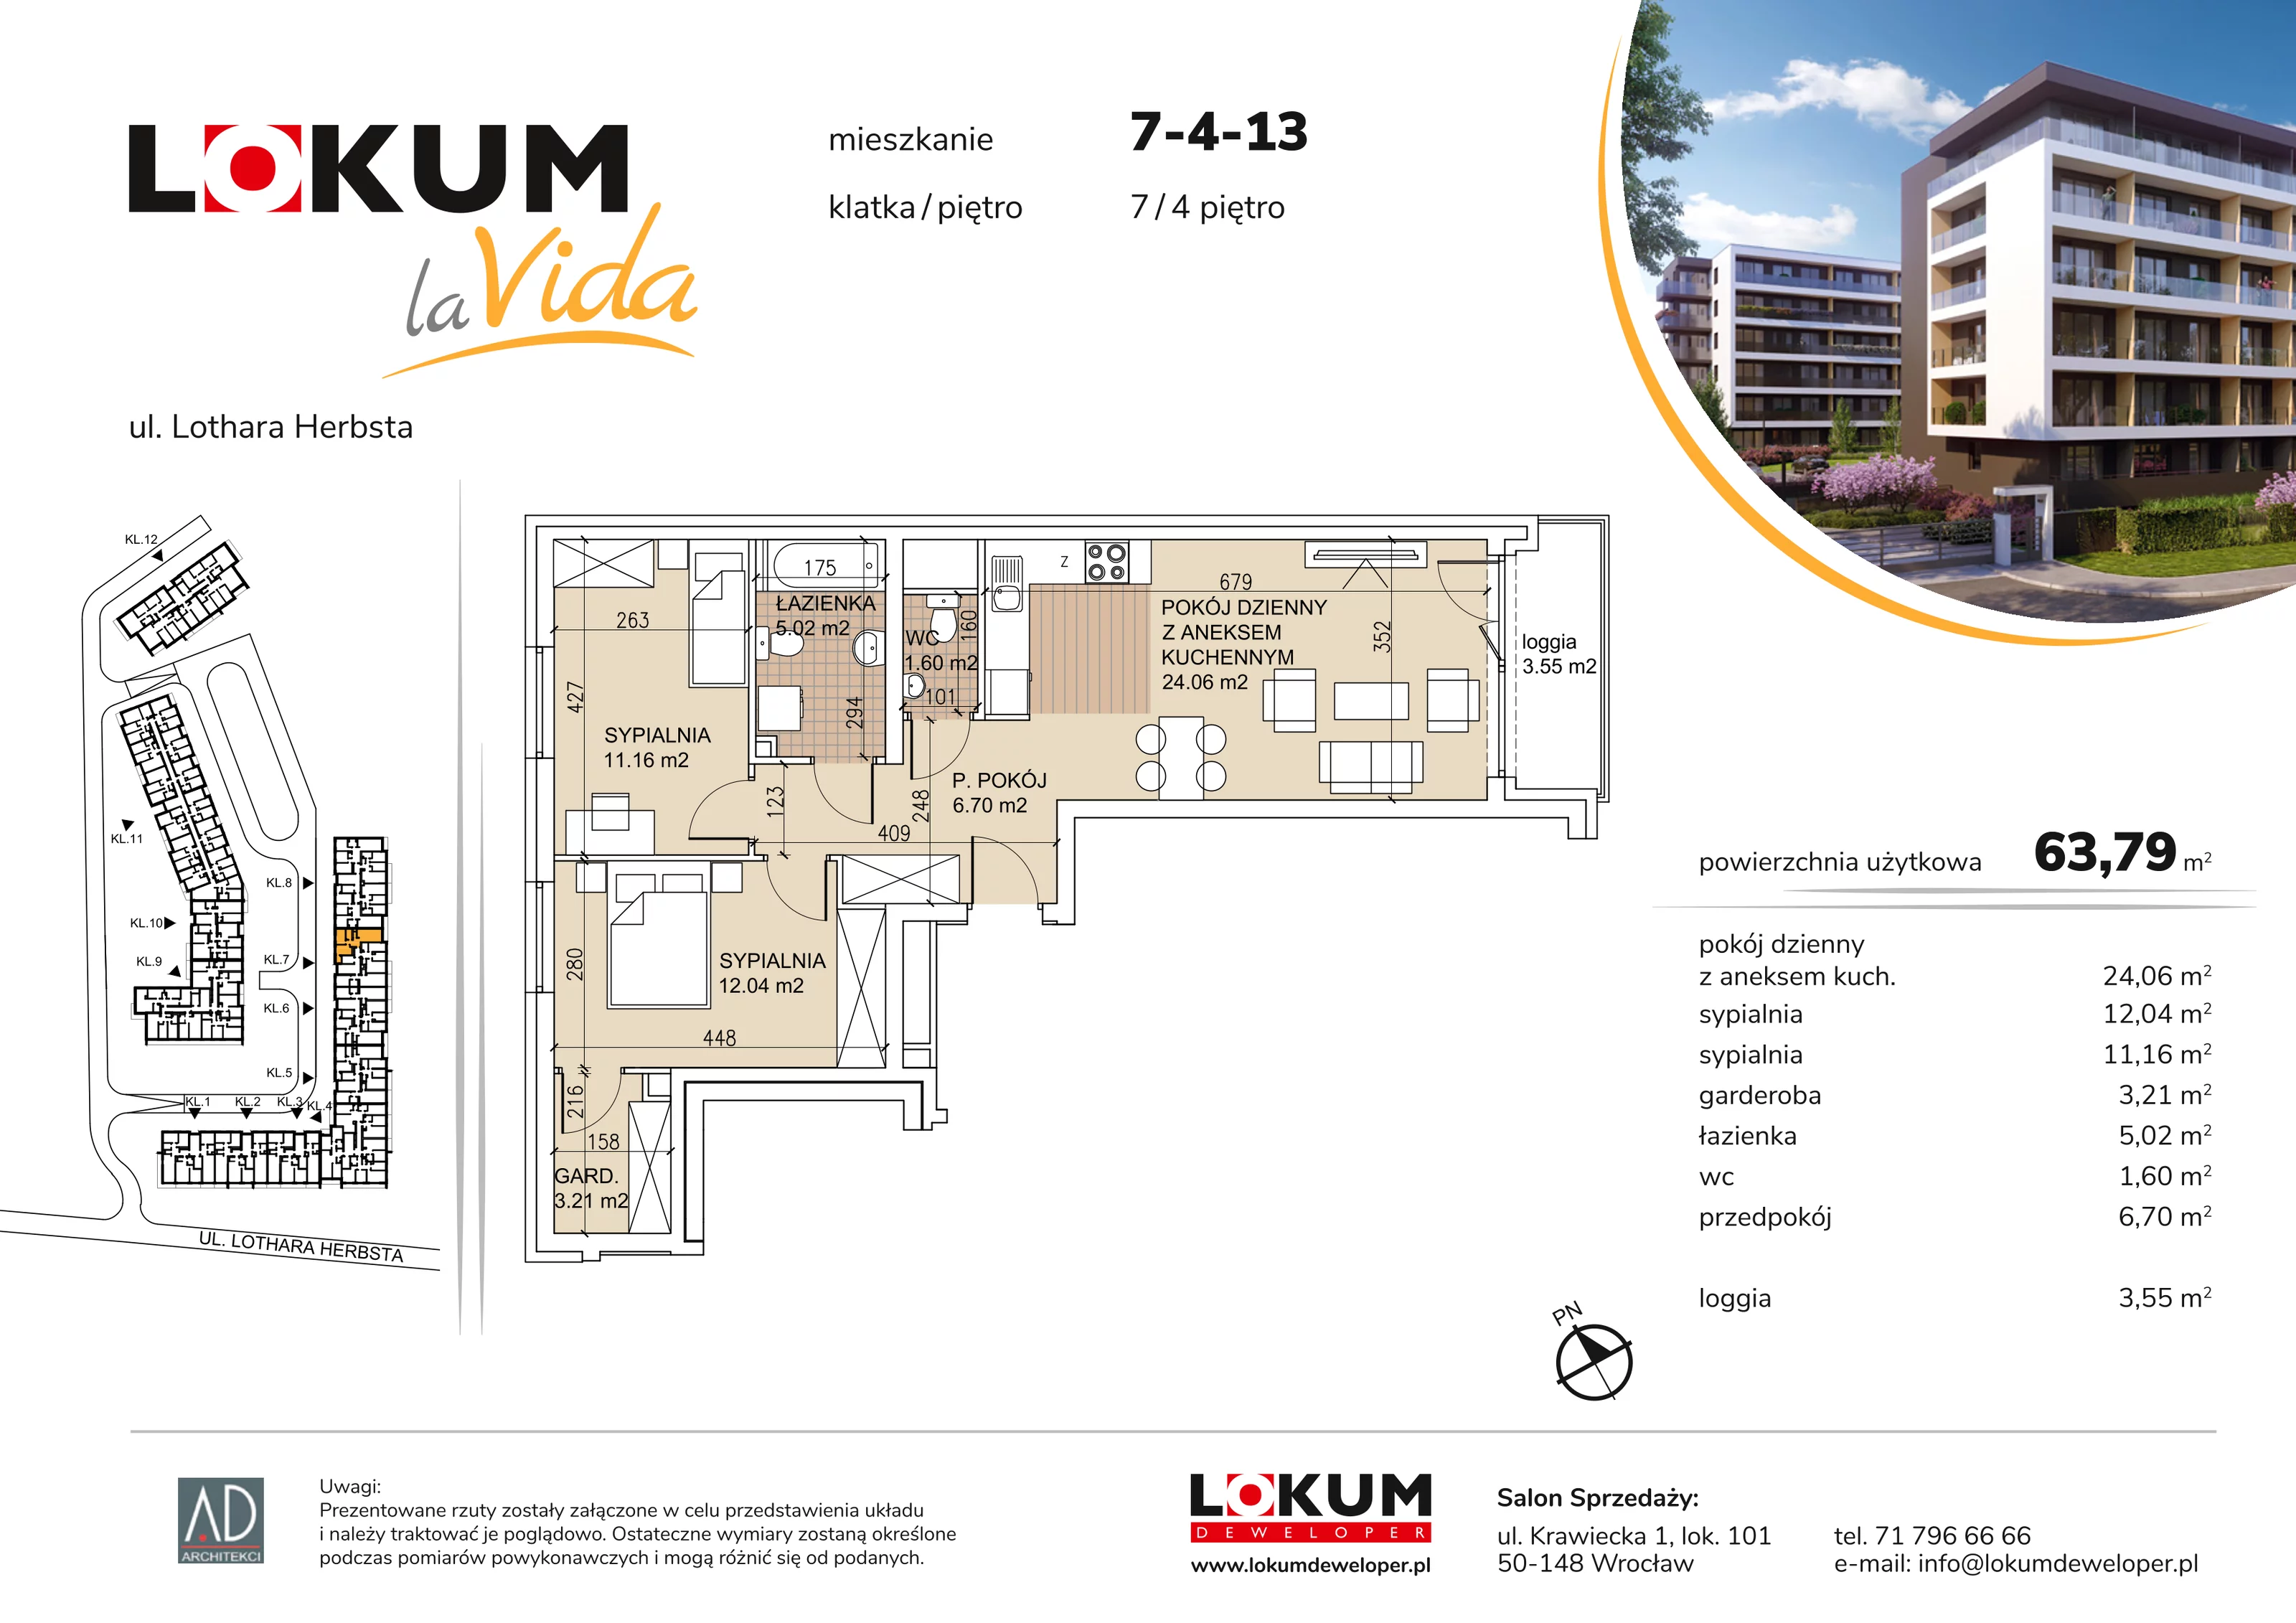 Mieszkanie 63,79 m², piętro 4, oferta nr 7-4-13, Lokum la Vida, Wrocław, Sołtysowice, ul. Lothara Herbsta